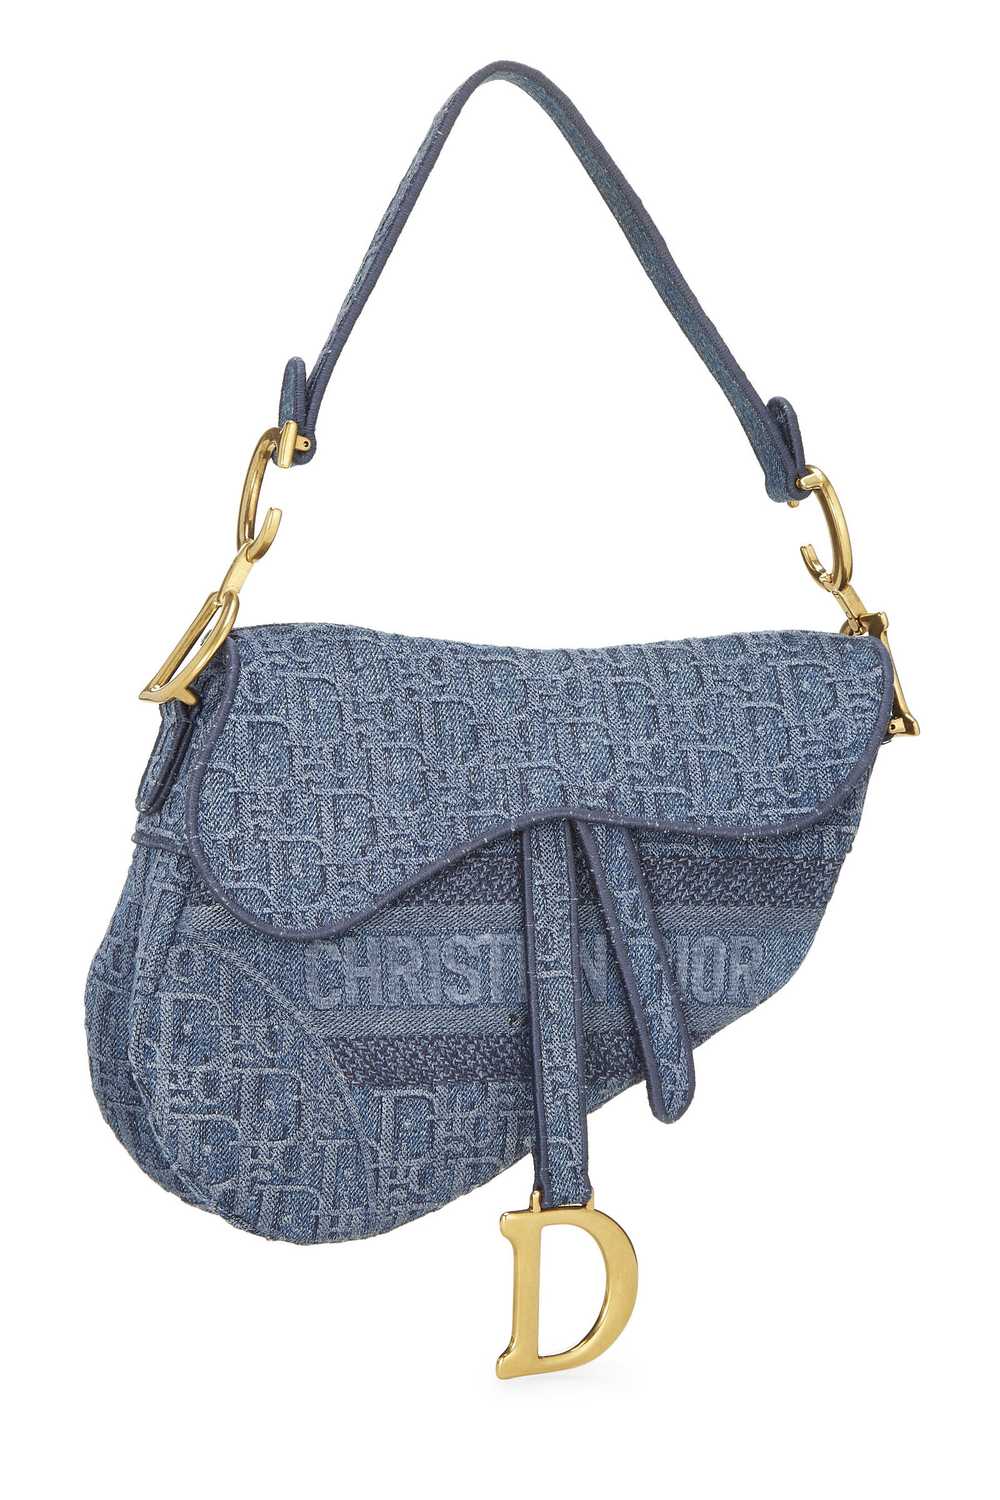 Blue Oblique Denim Saddle Bag - image 2